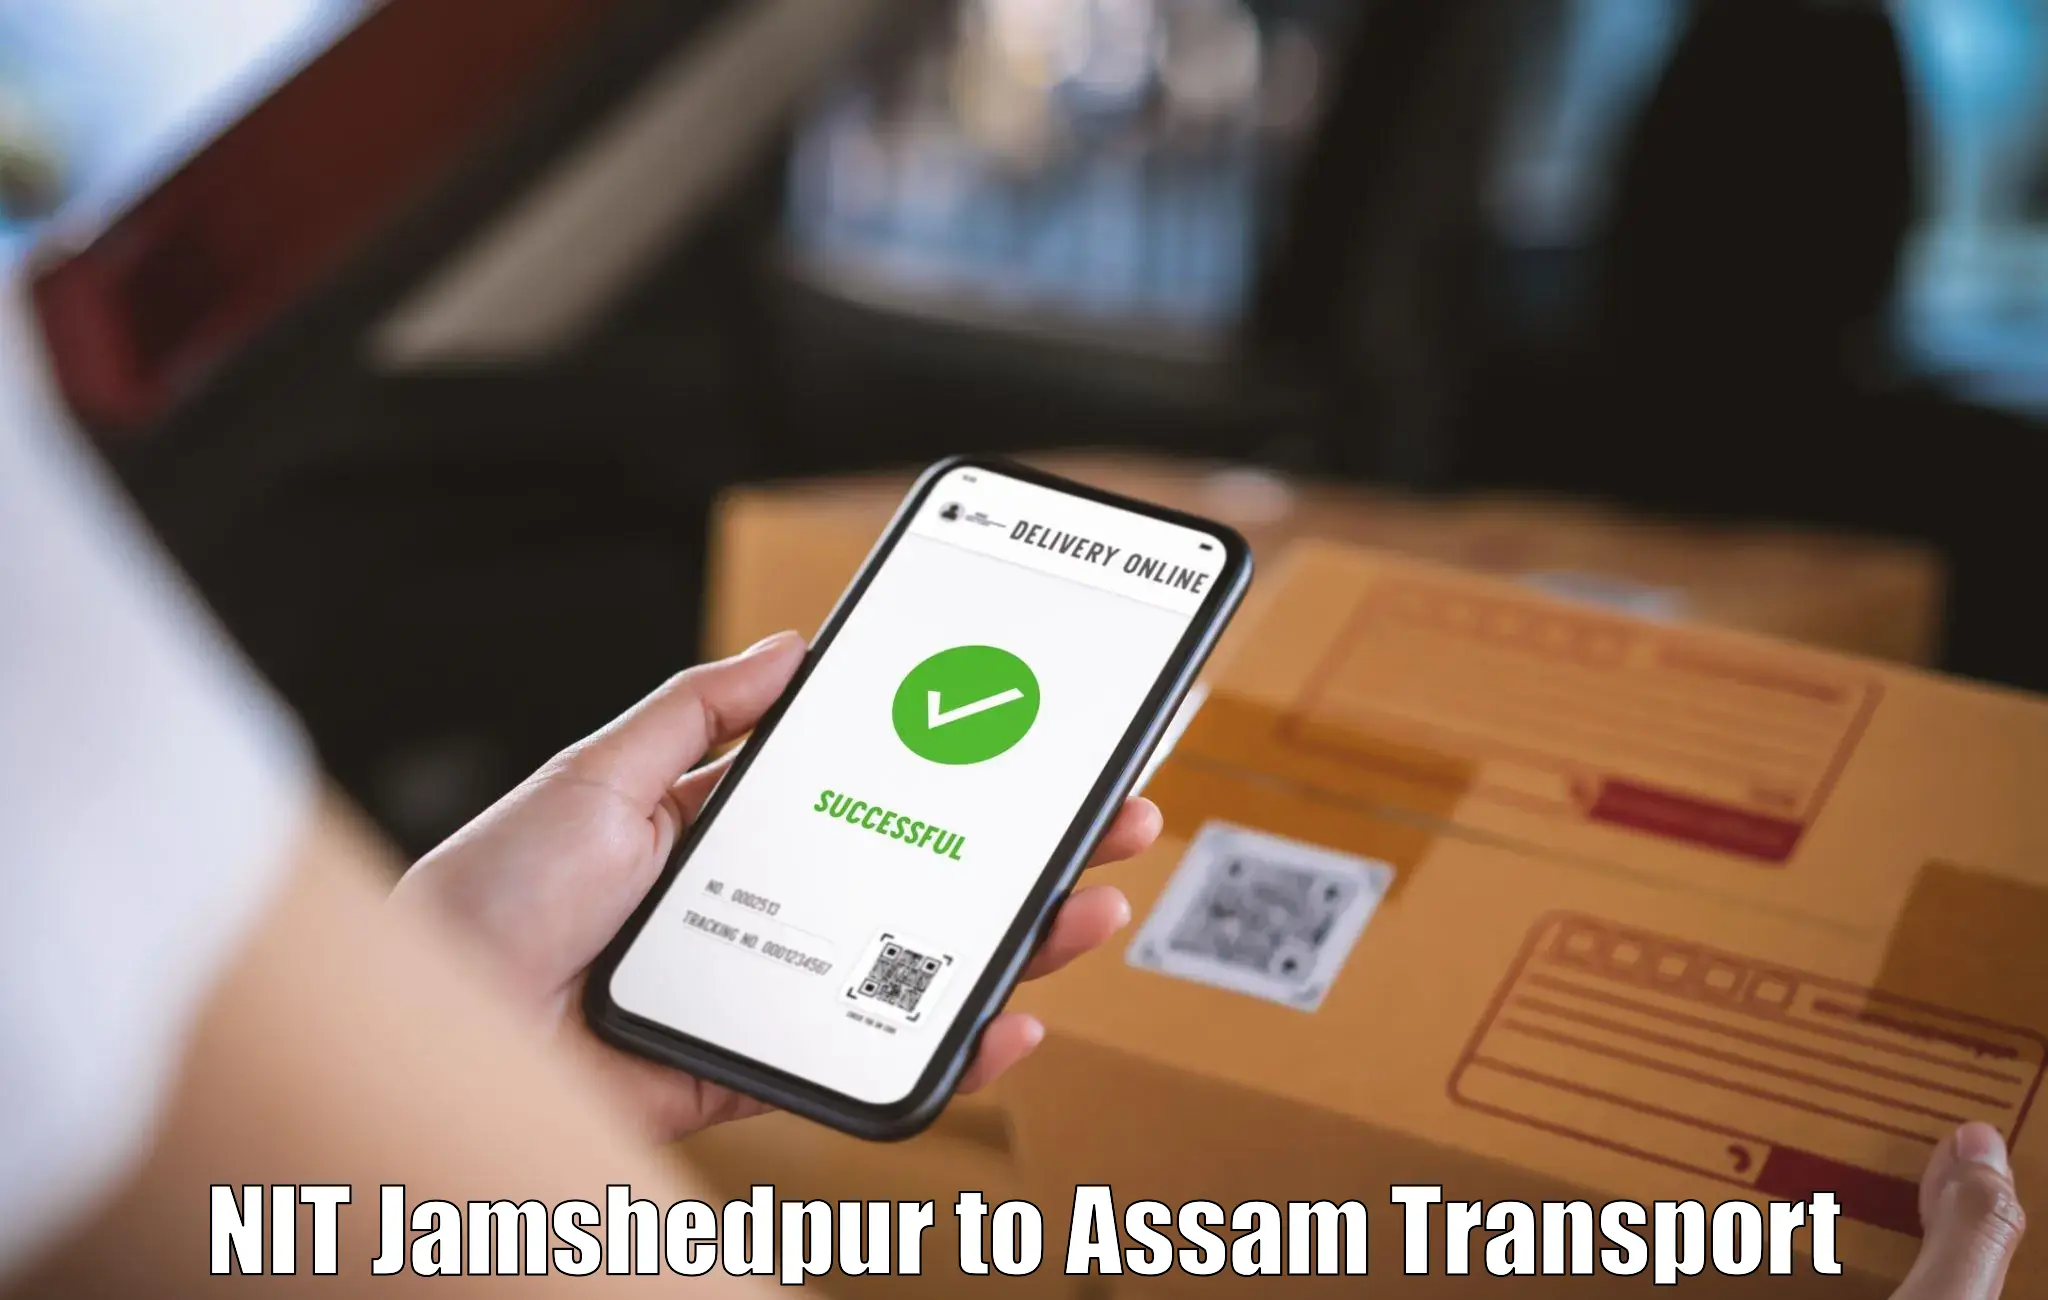 Transport shared services NIT Jamshedpur to Barpeta